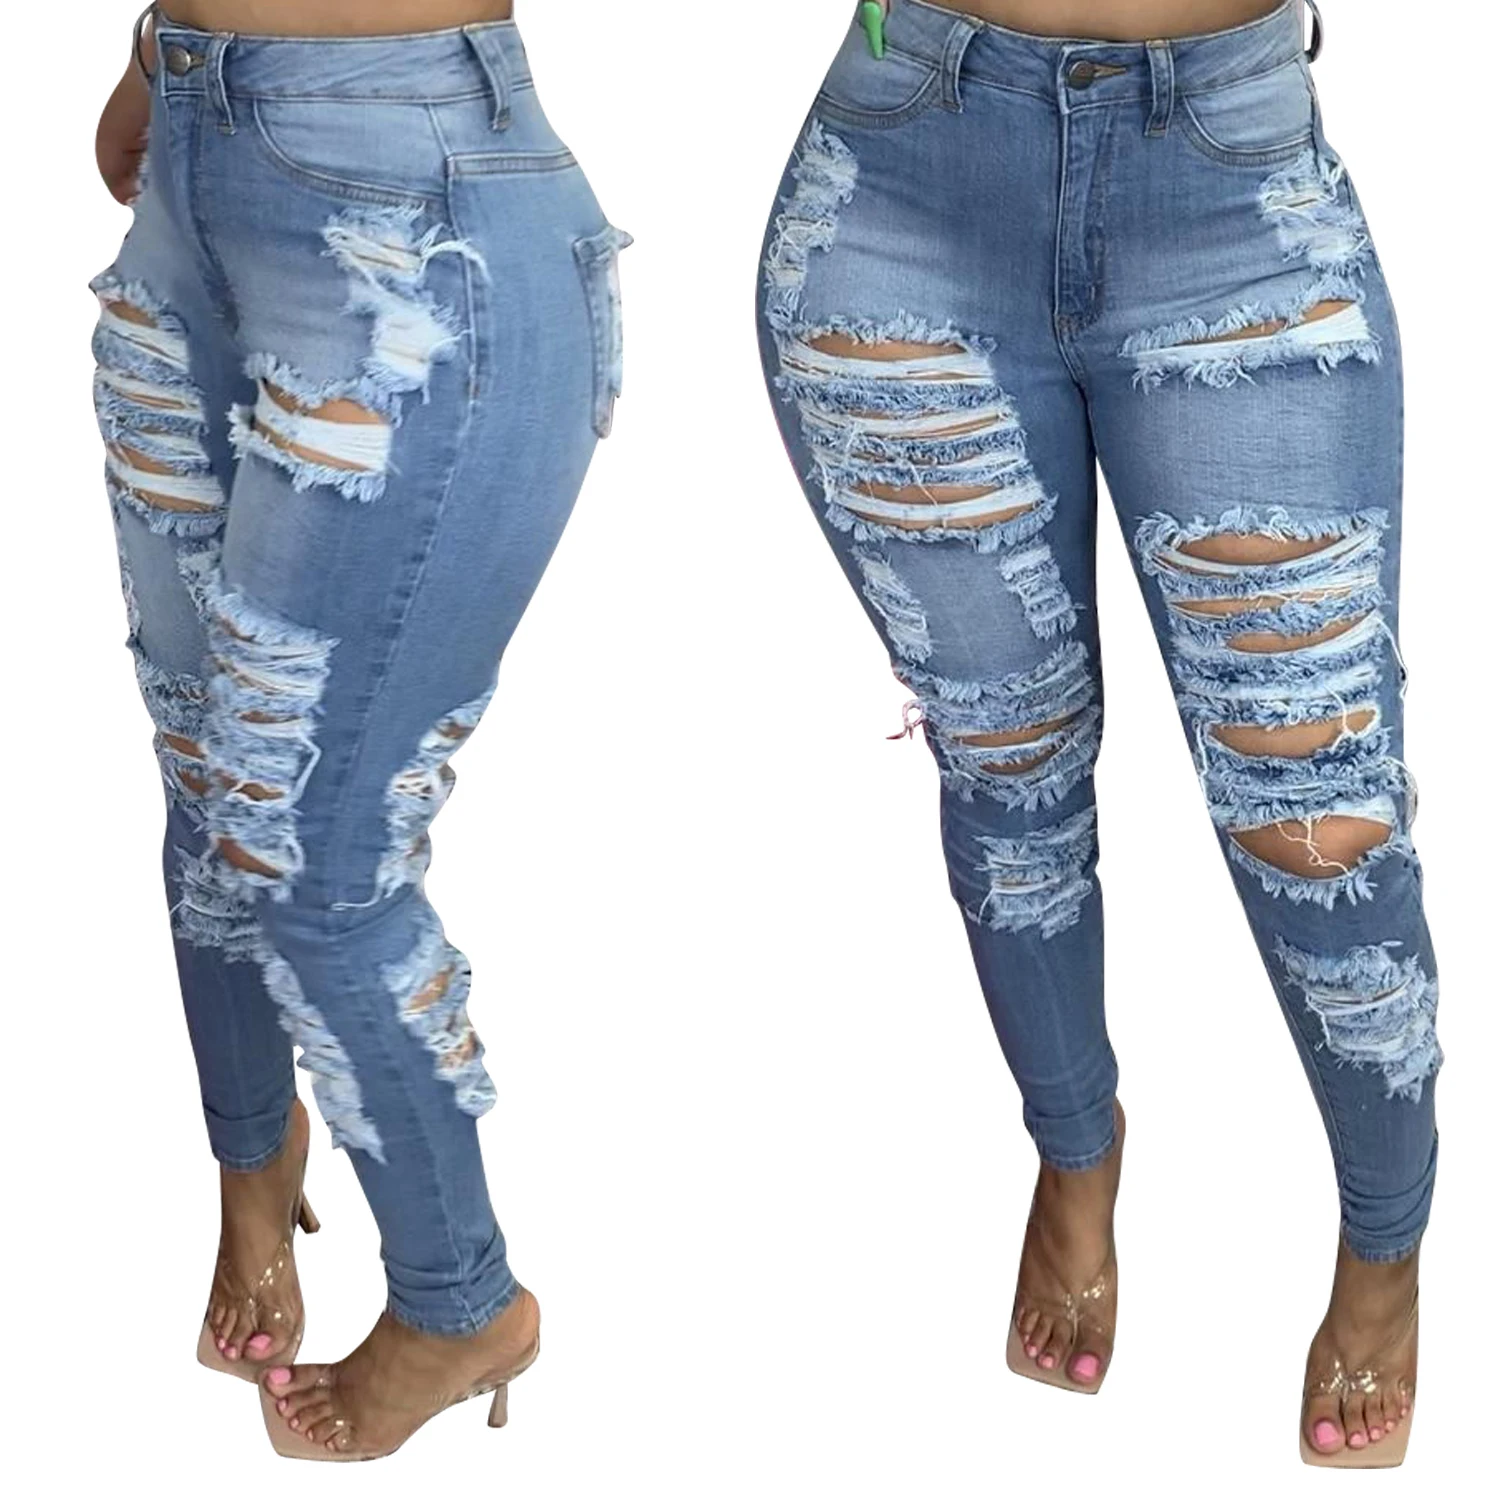 Women Jeans  Buy Jeans for Women Online in India  Myntra